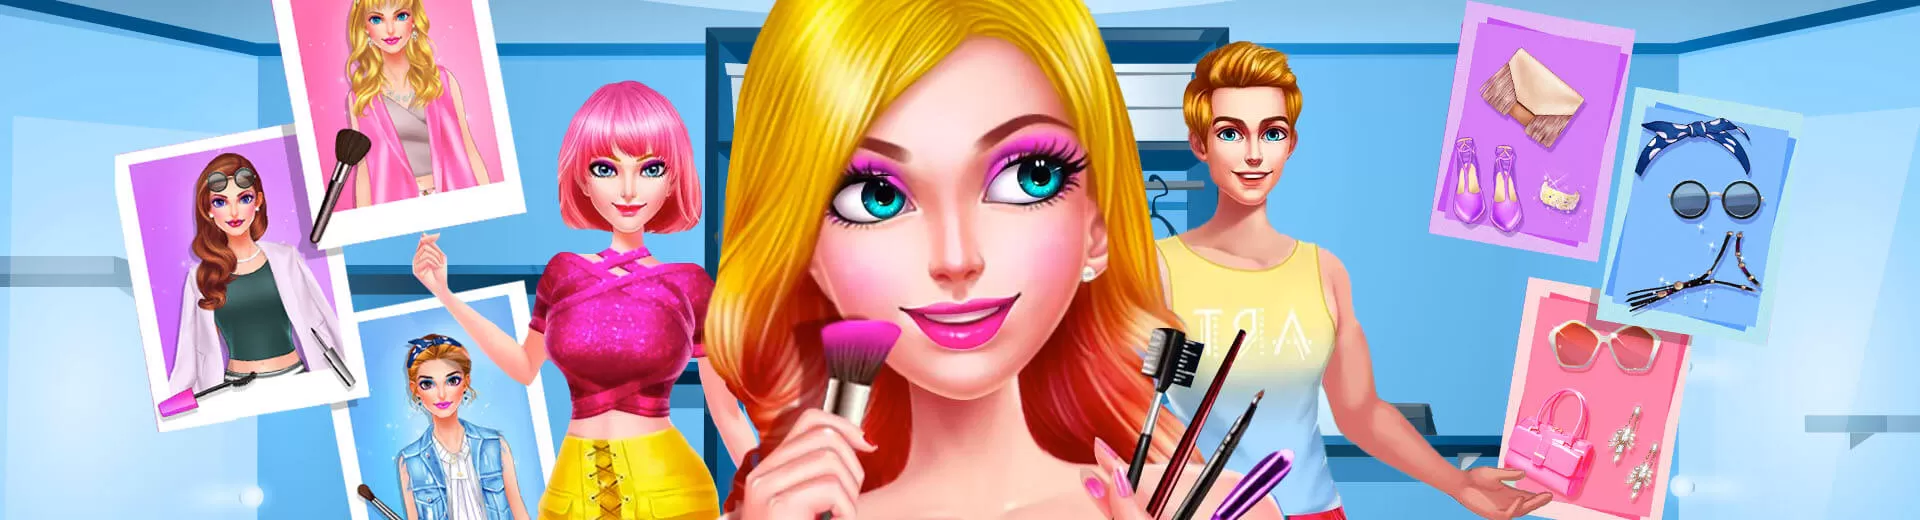 School Date Makeup Artist Emulator Pc